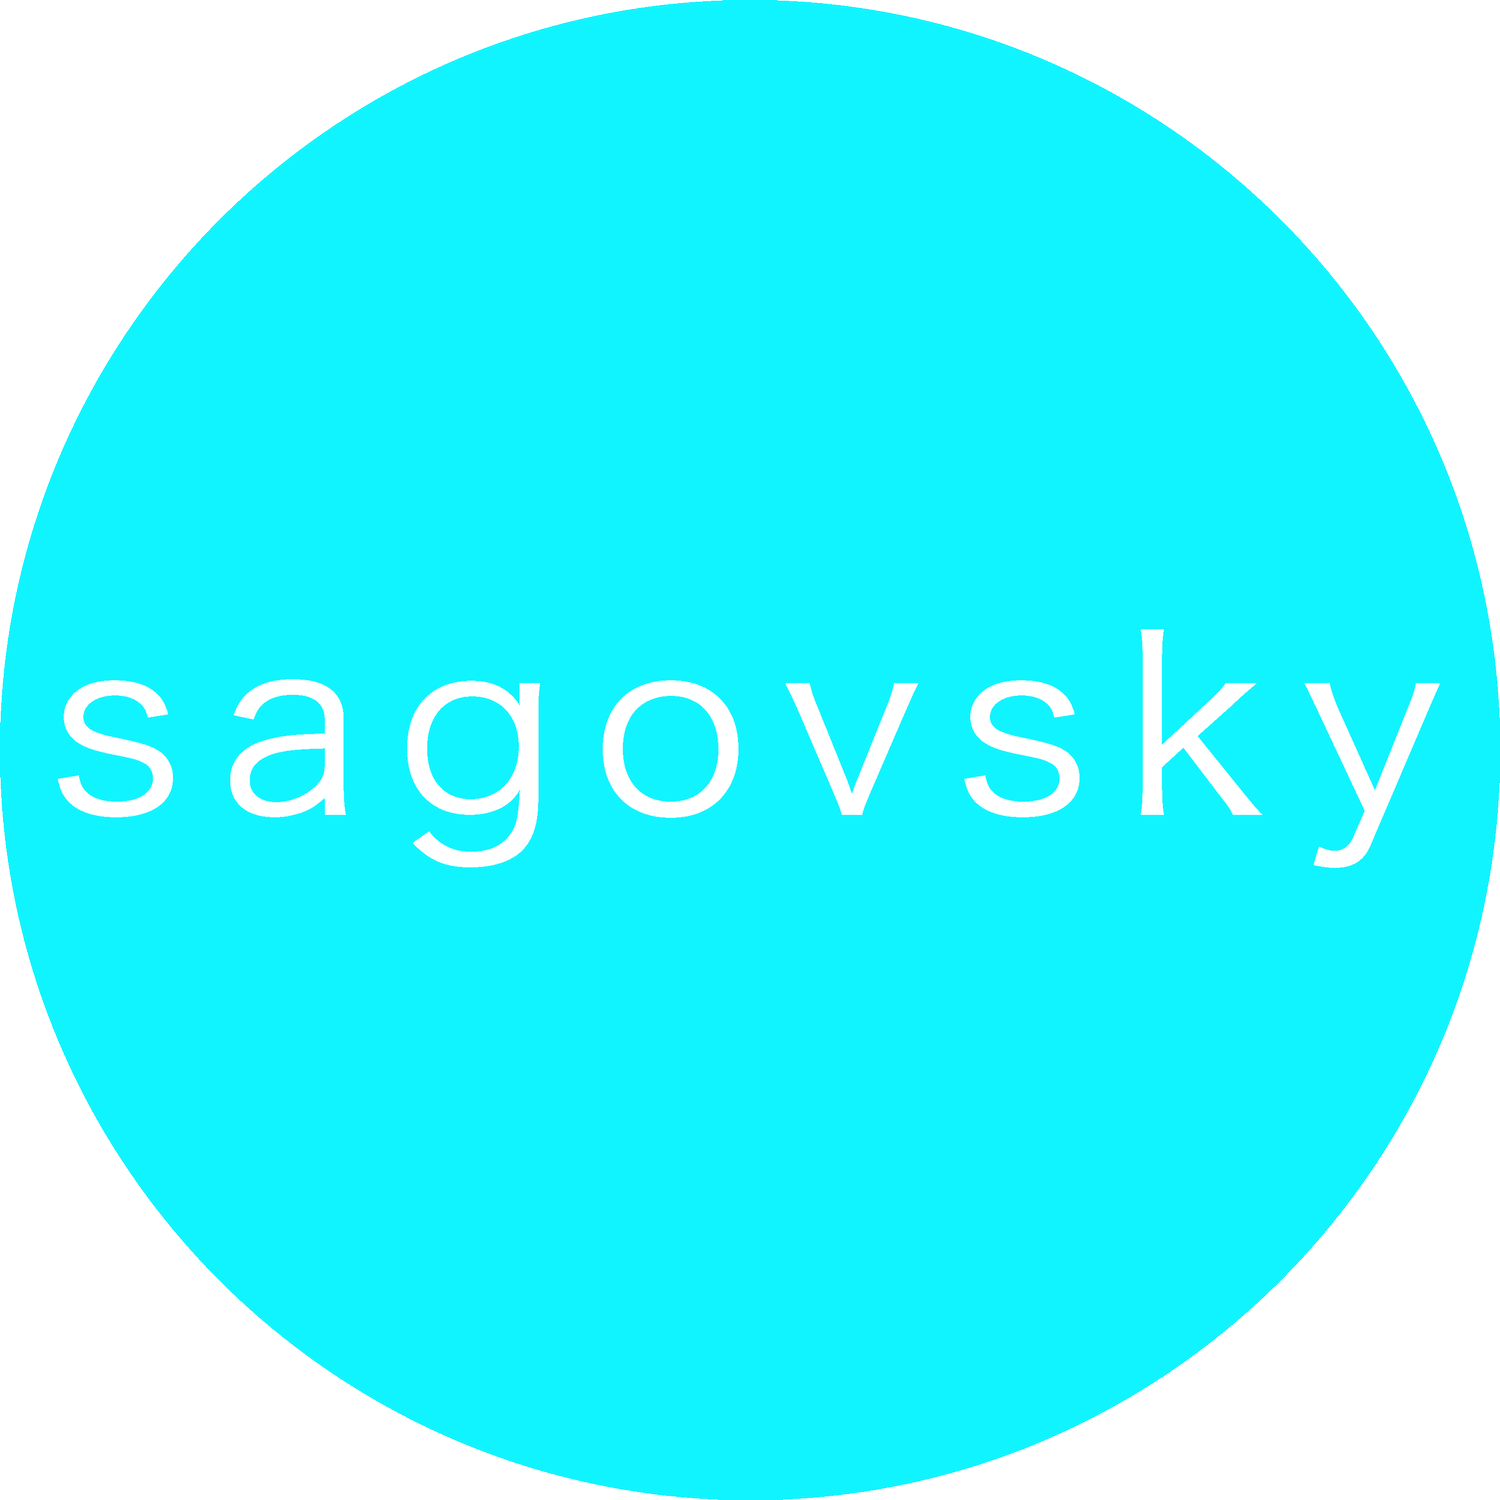 SAGOVSKY